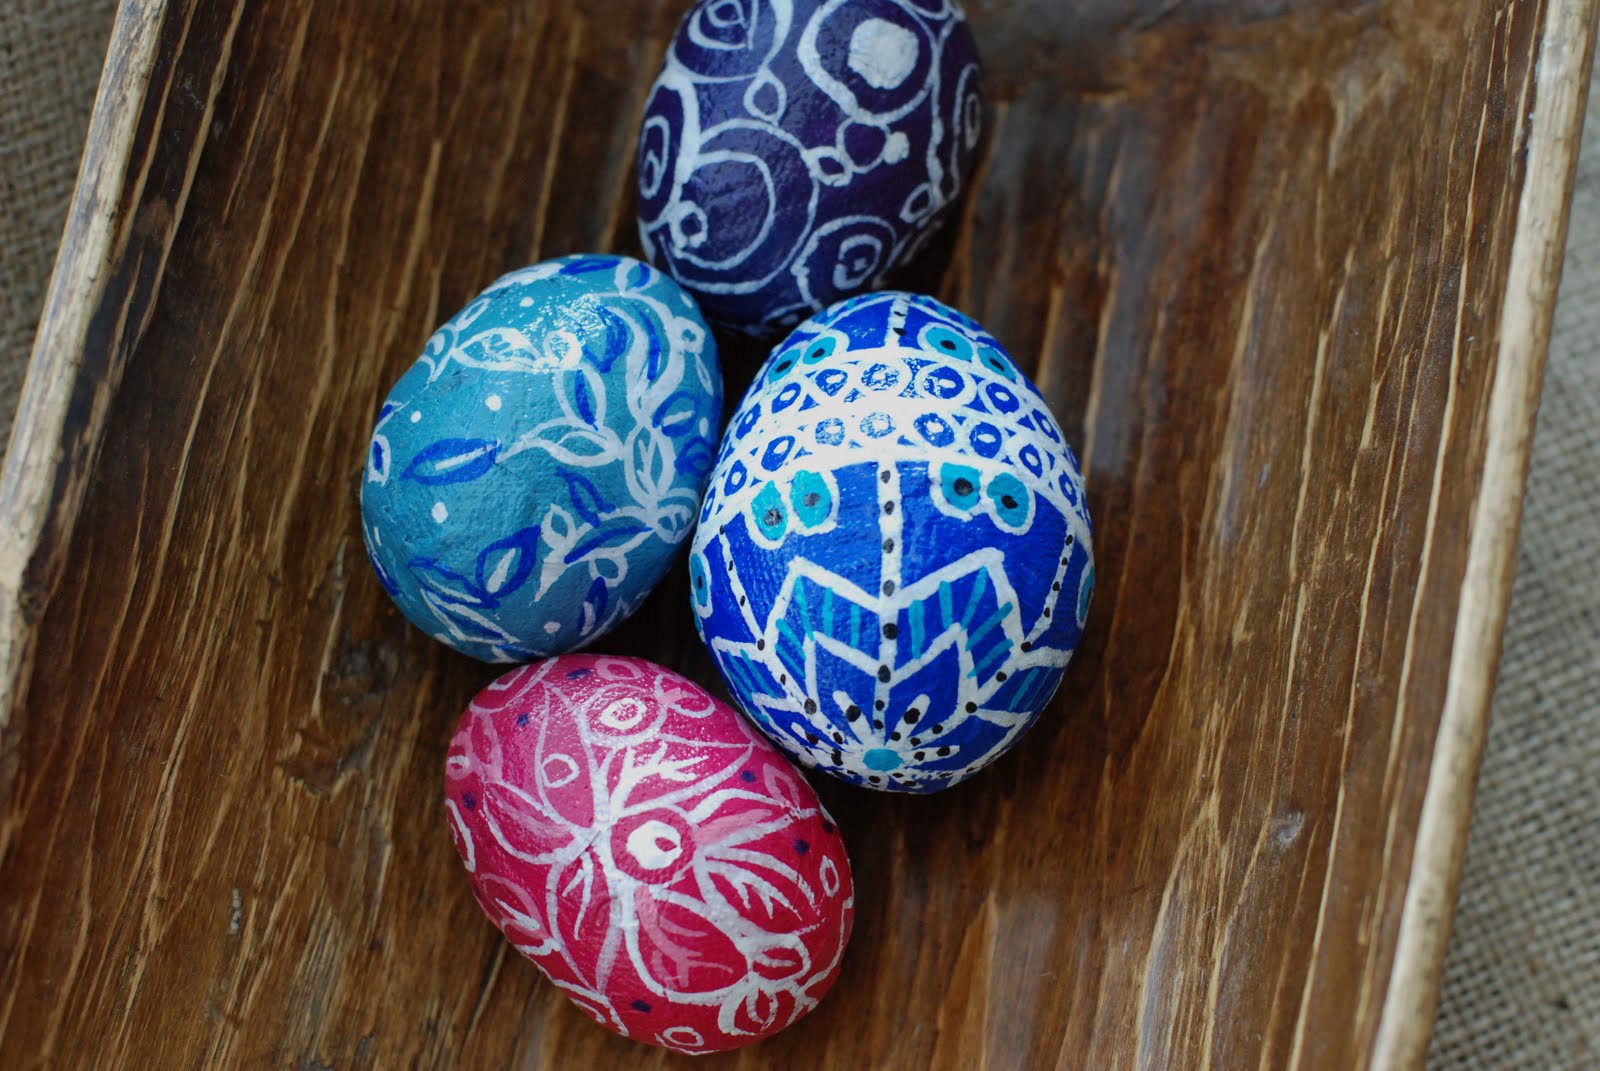 Easter Eggs 1 